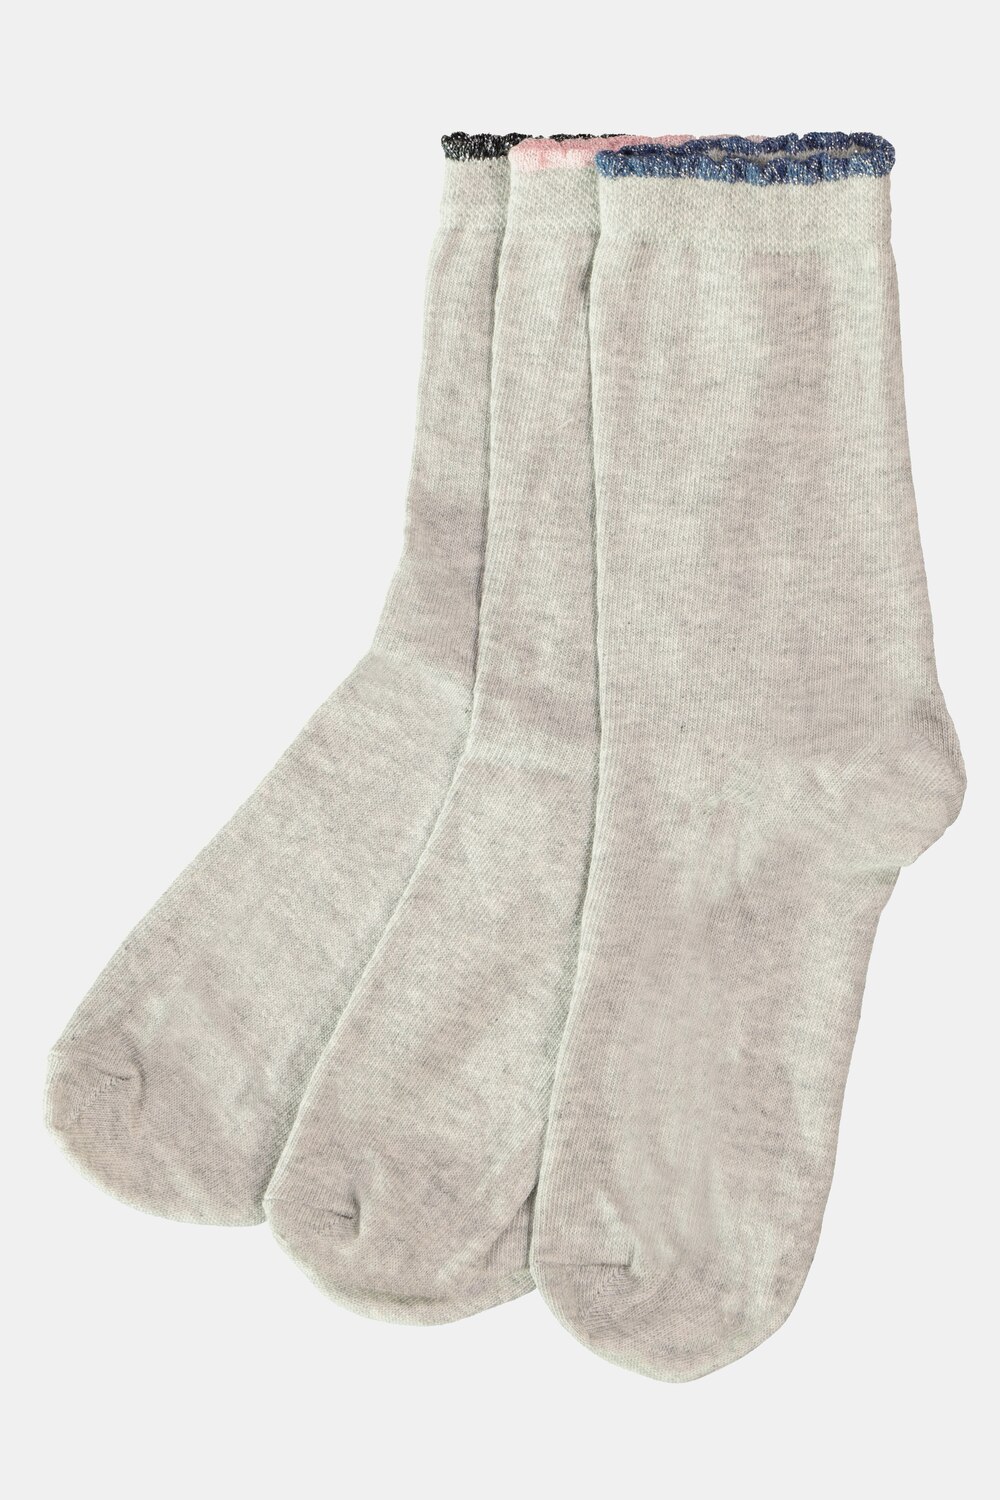 Grote Maten sokken, Dames, grijs, Maat: One Size, Katoen/Synthetische vezels, Ulla Popken